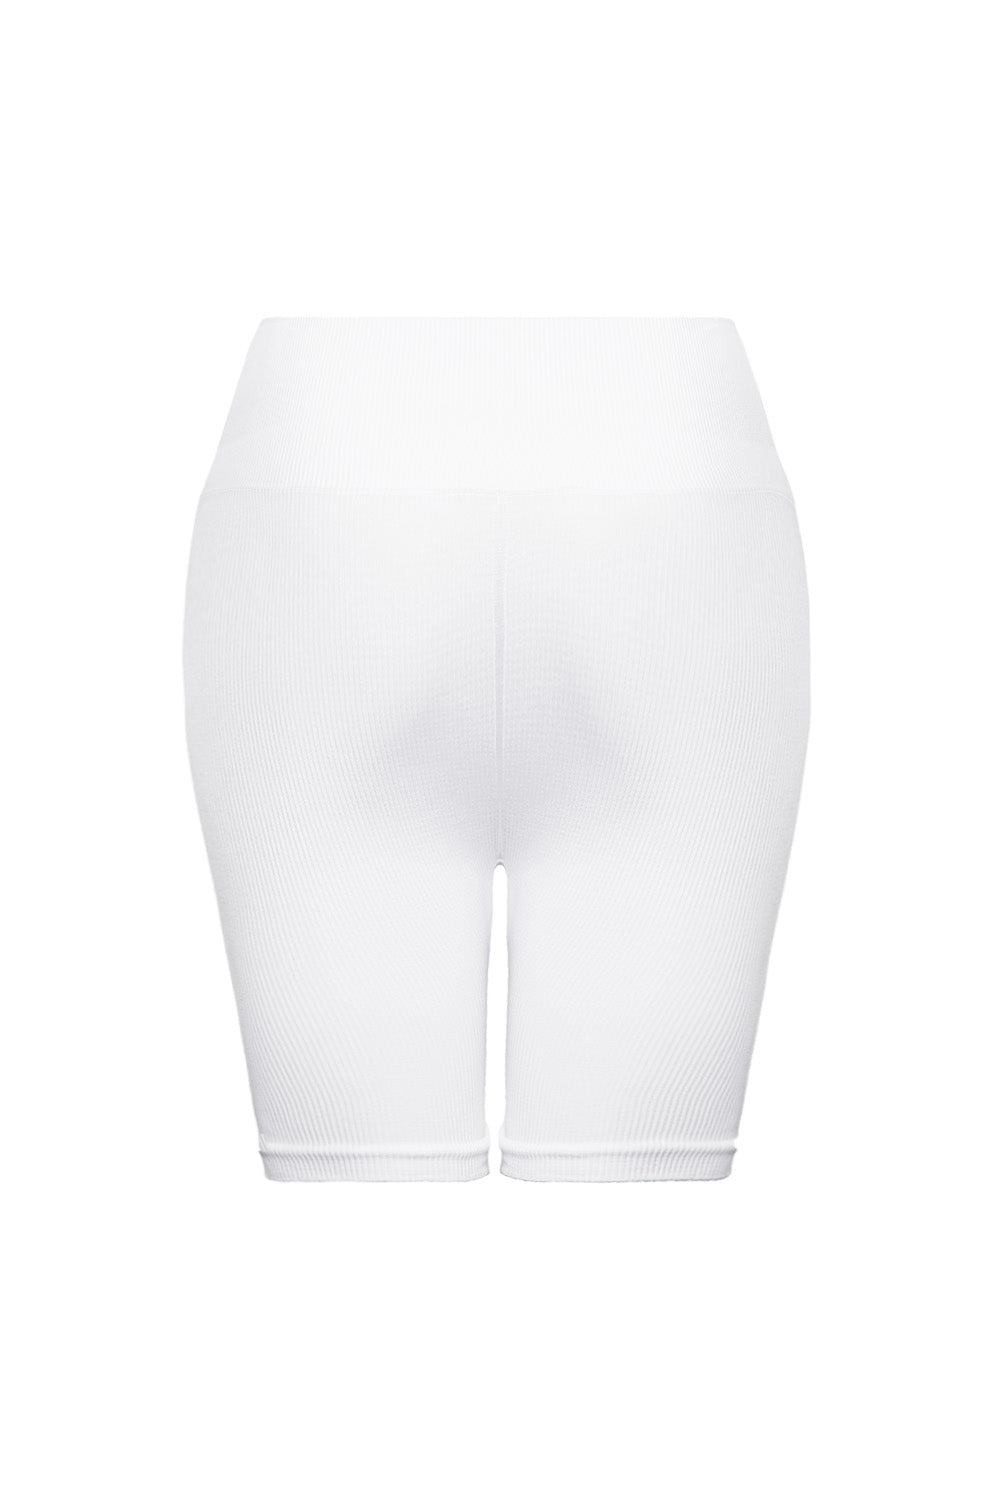 Shorts №65 SUPER SOFT White